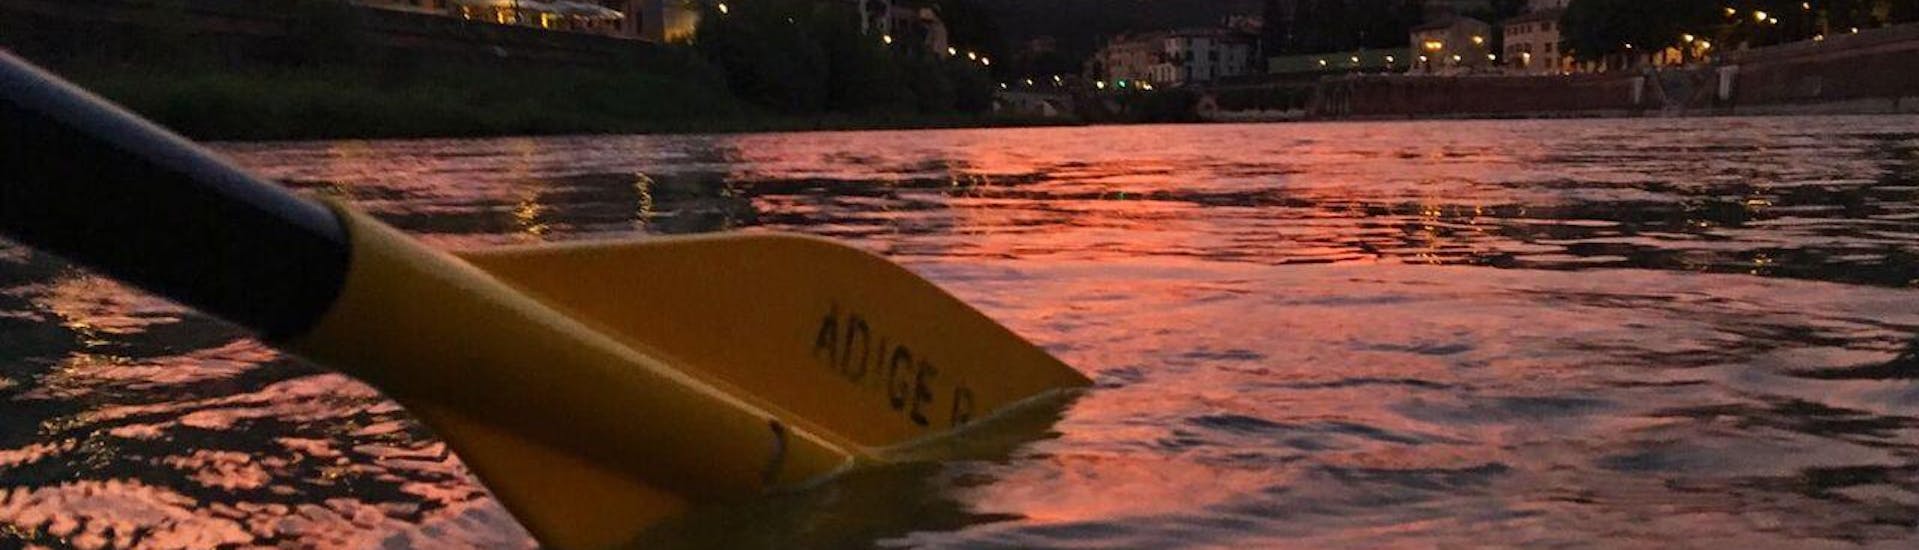 Rafting sul Fiume Adige con Aperitivo.